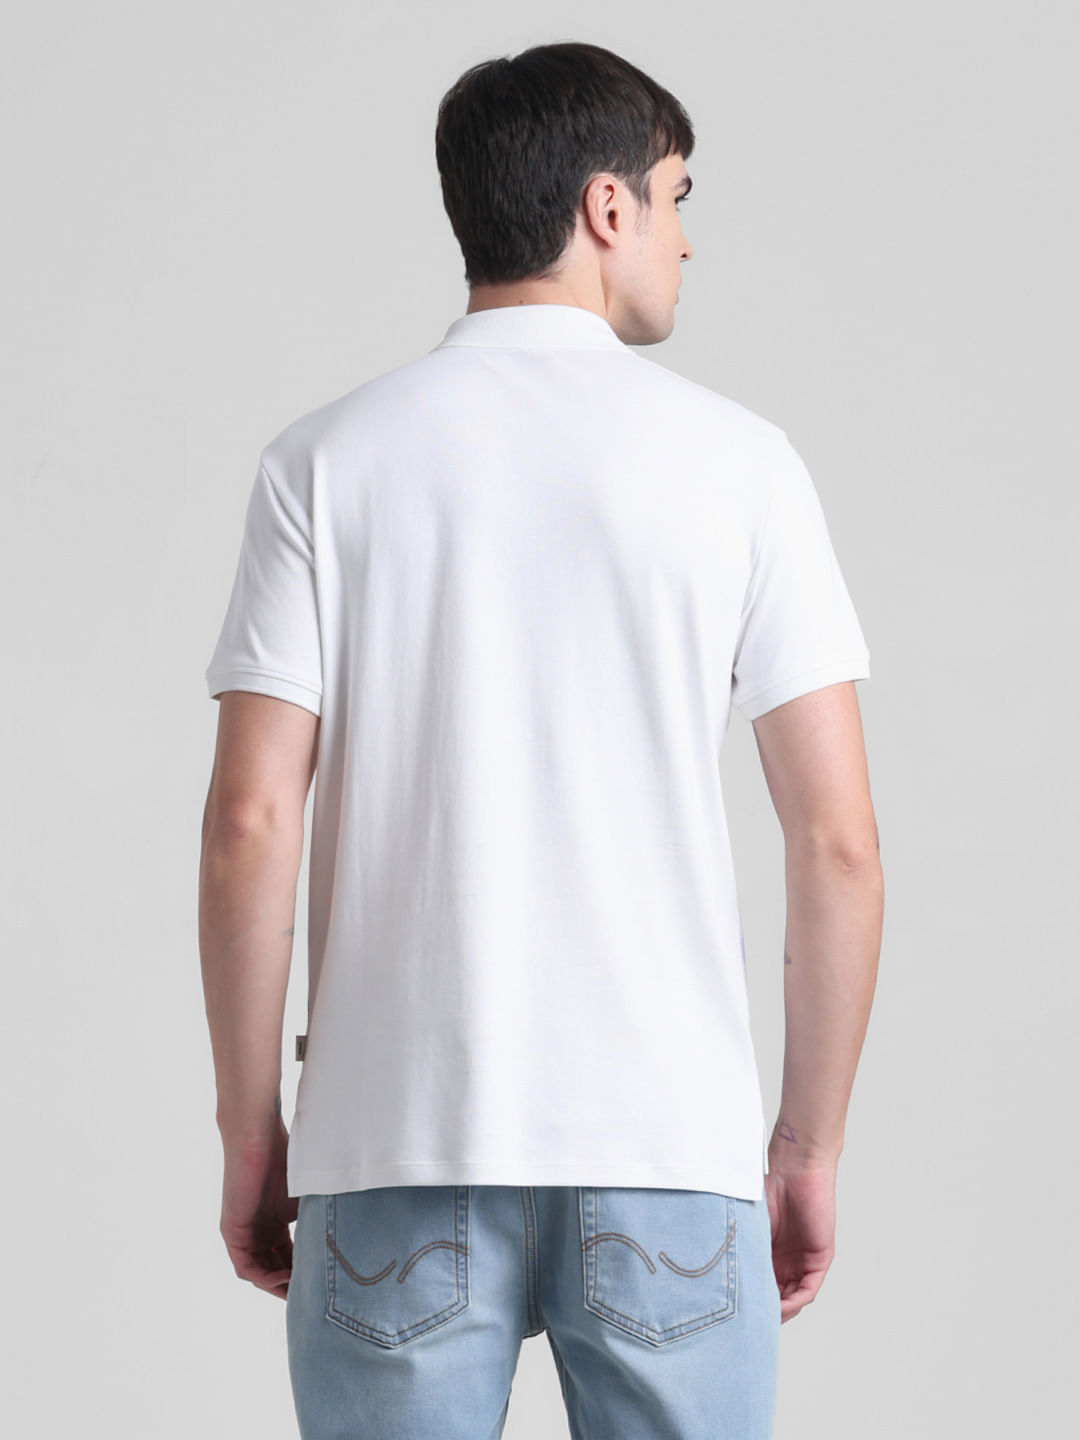 White Greece Print Polo T-shirt